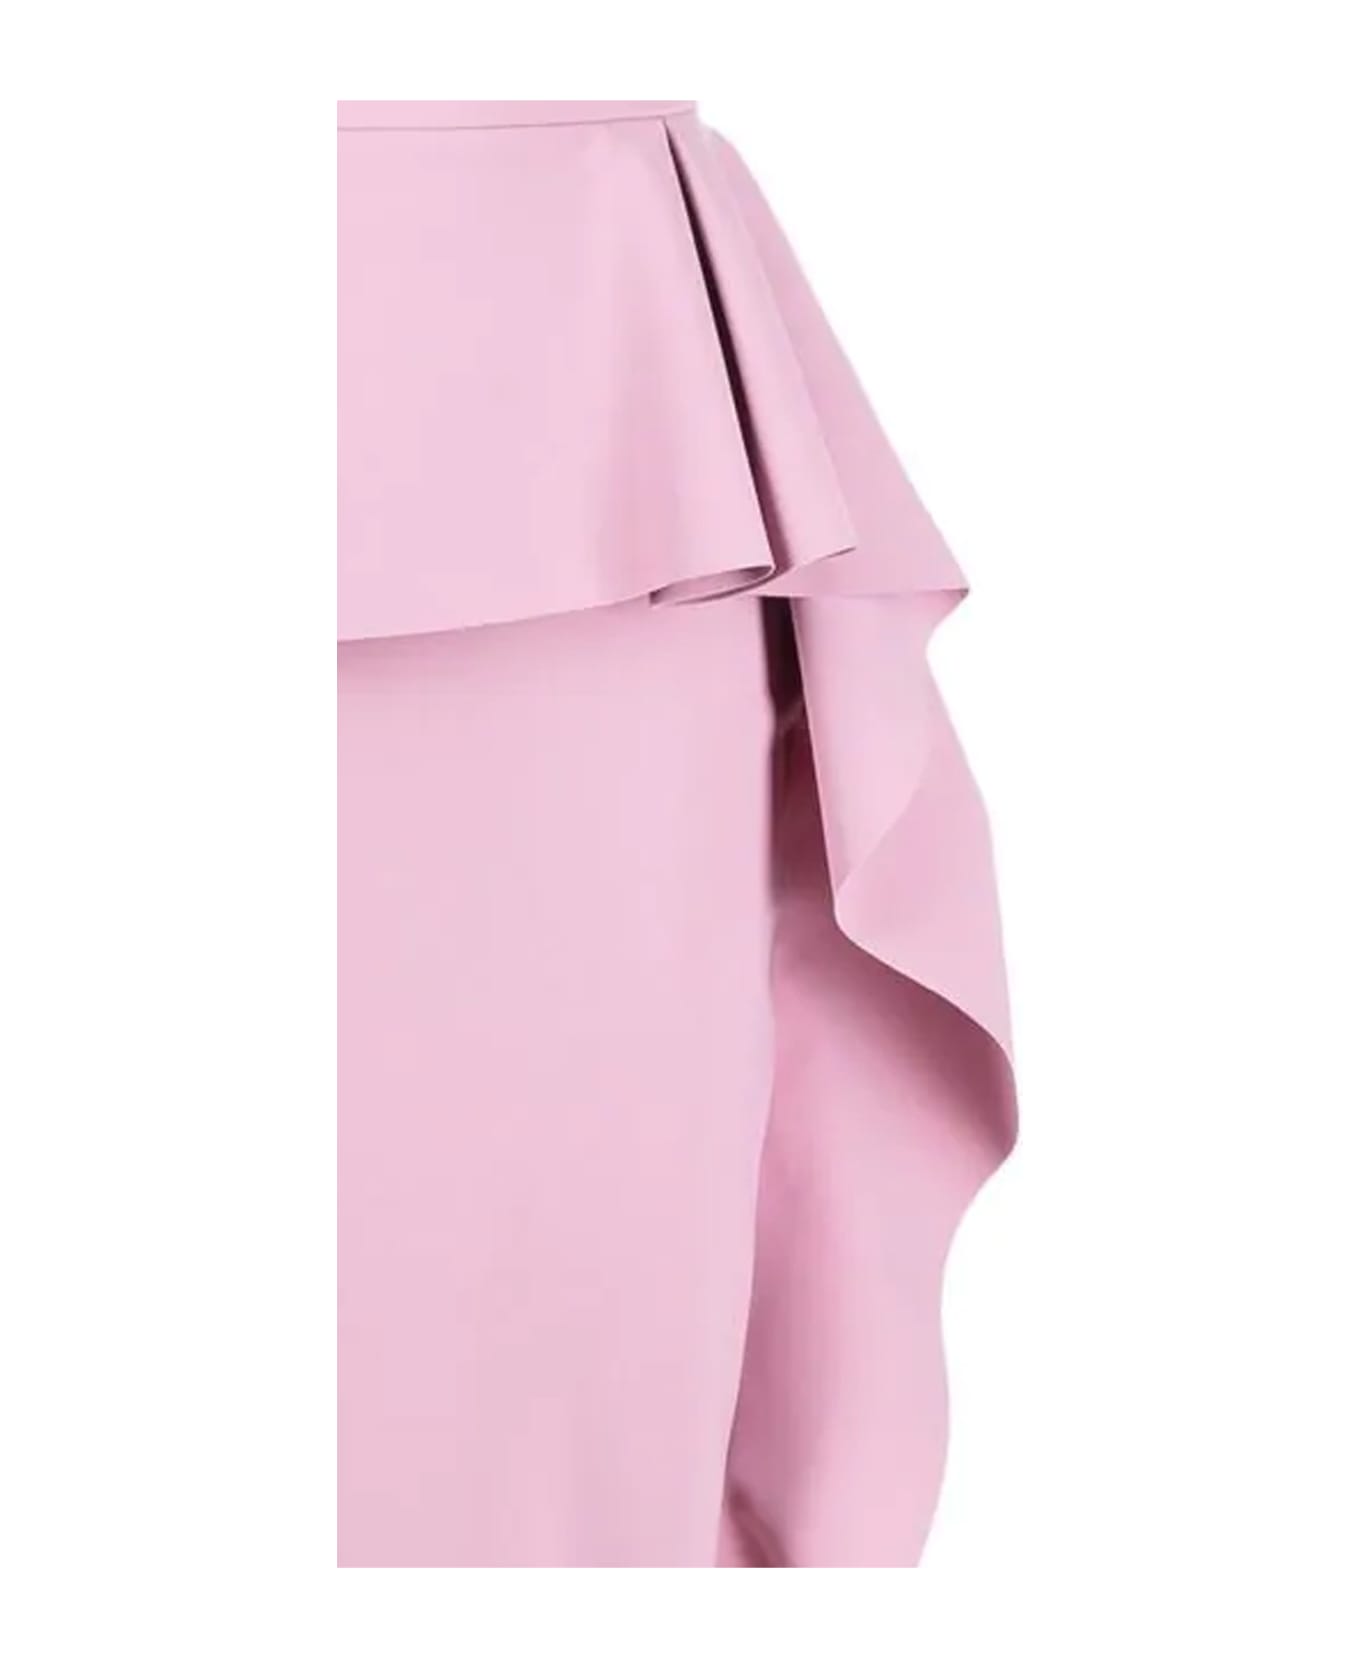 La Petit Robe Di Chiara Boni Margret Boat Neck Sleeveless Dress - Tuberose